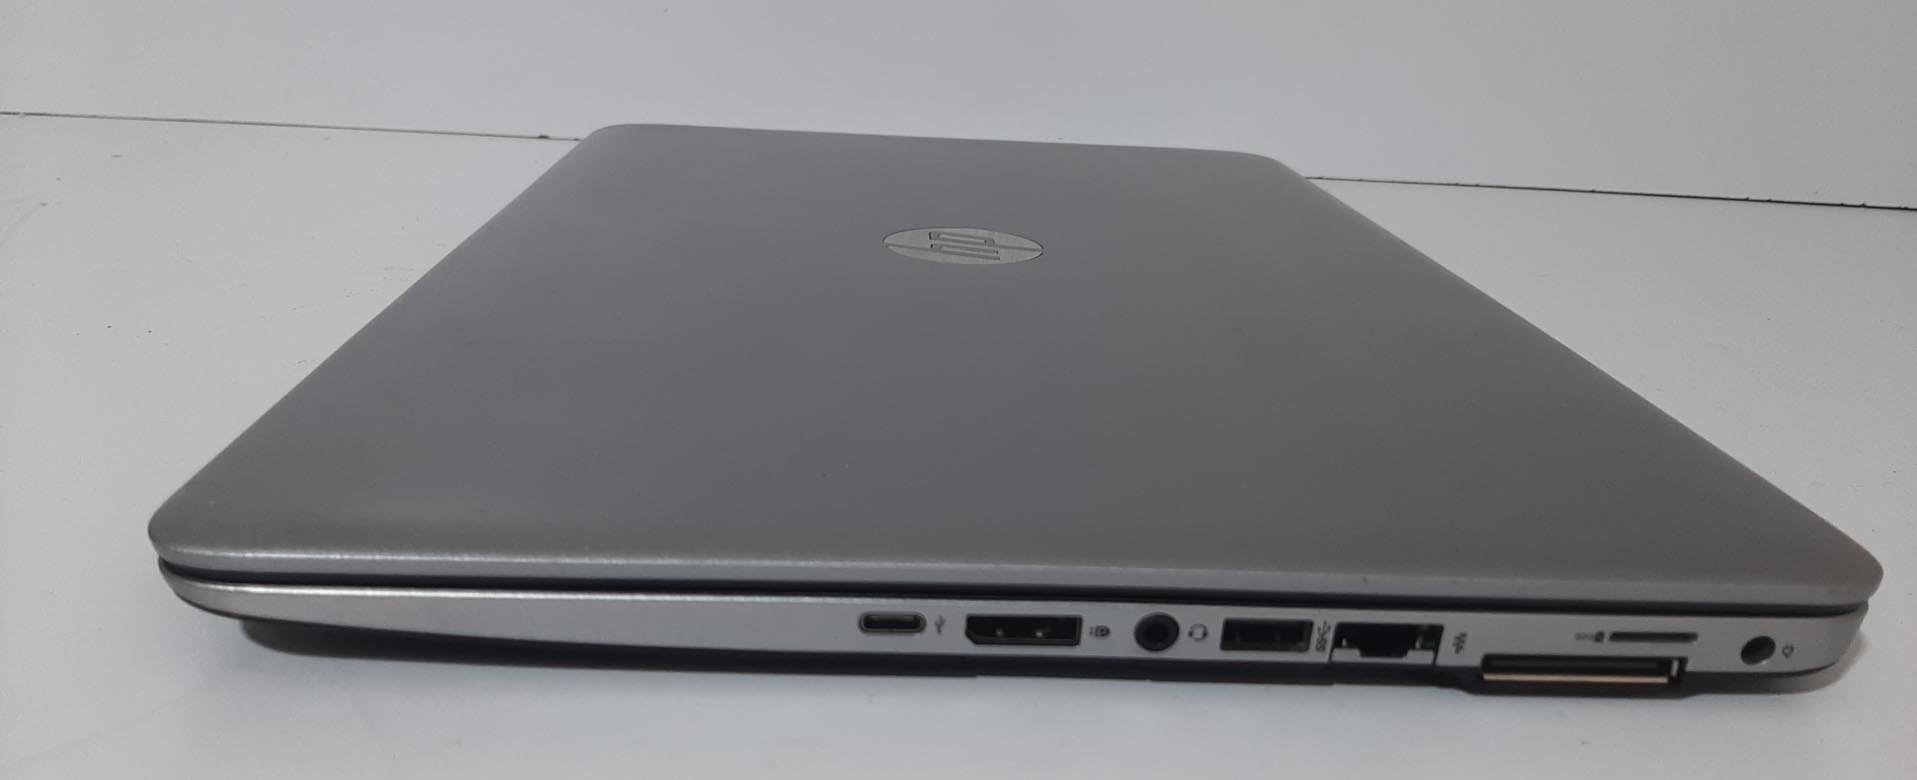 لپ تاپ استوک  Hp 850 G3 Ci5 /6300U  Touch